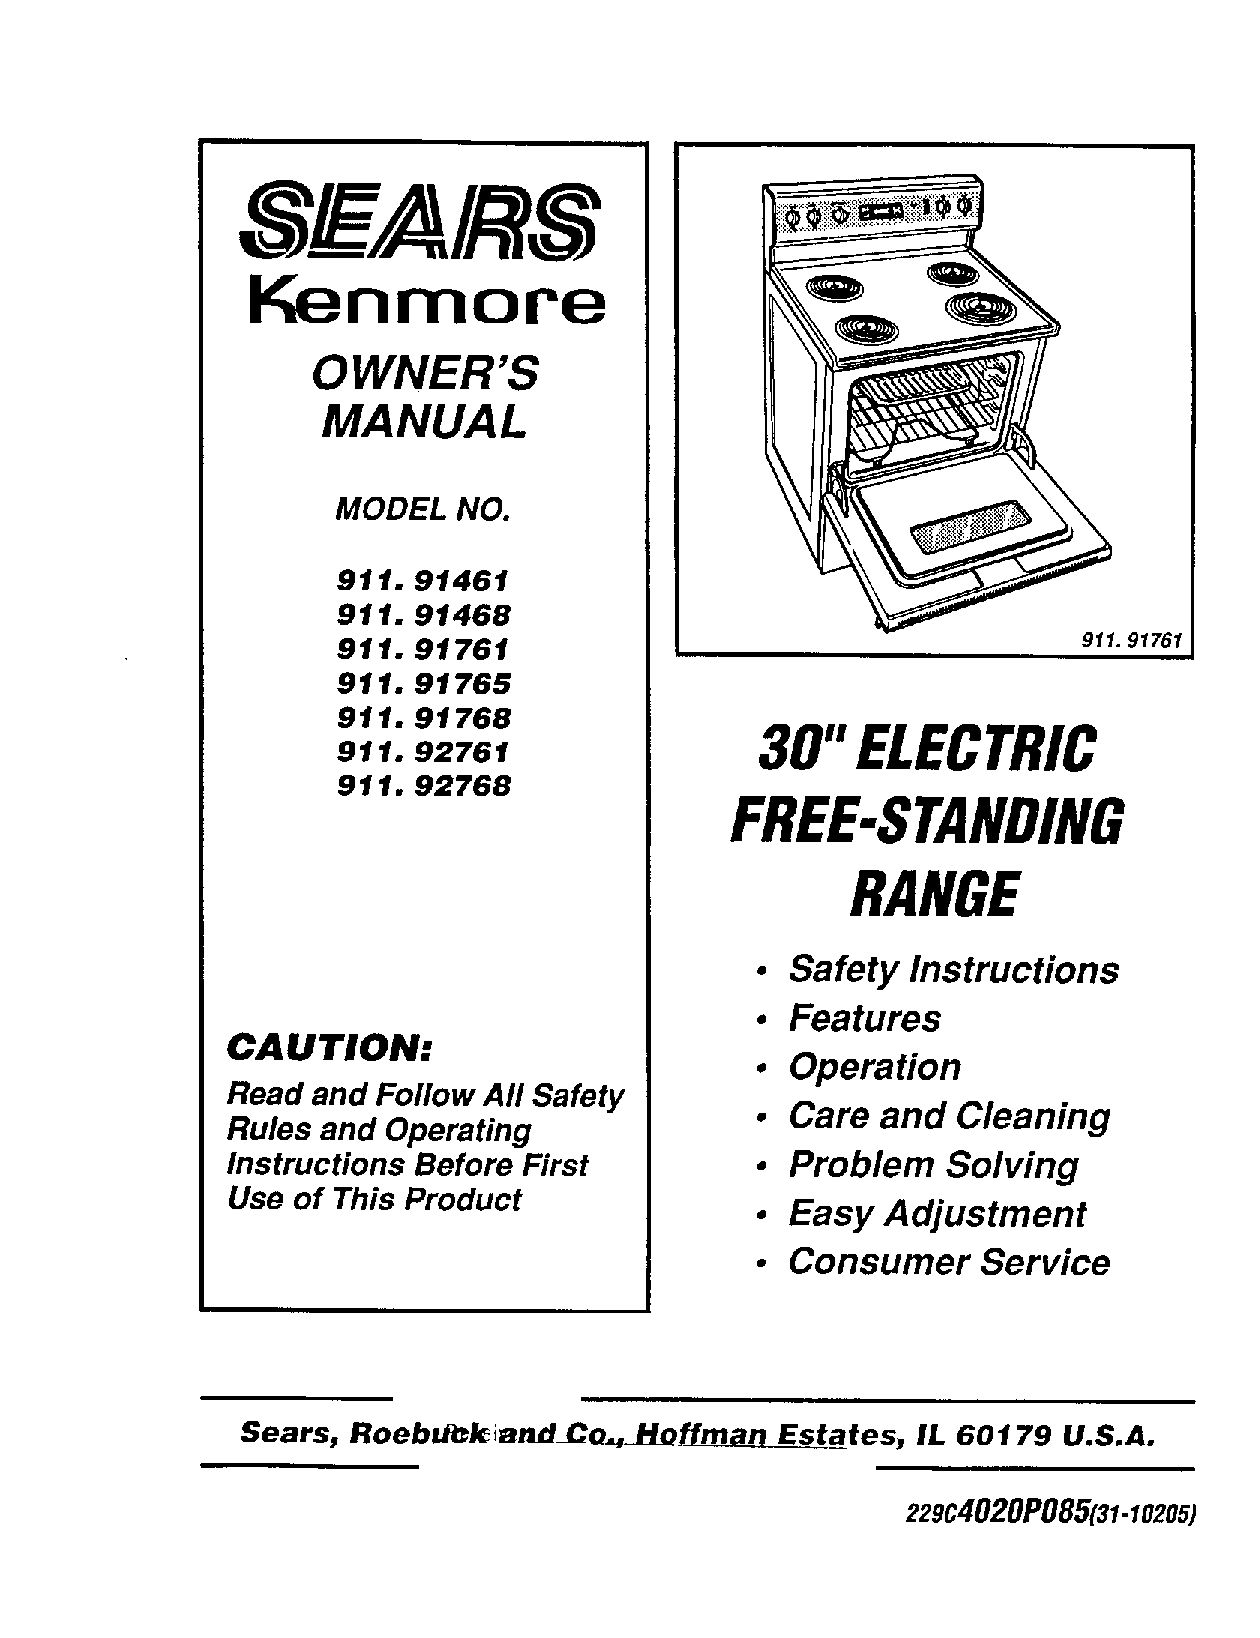 Sears 911.92768, 911.92761, 911.91468, 911.91461, 911.91761 User Manual